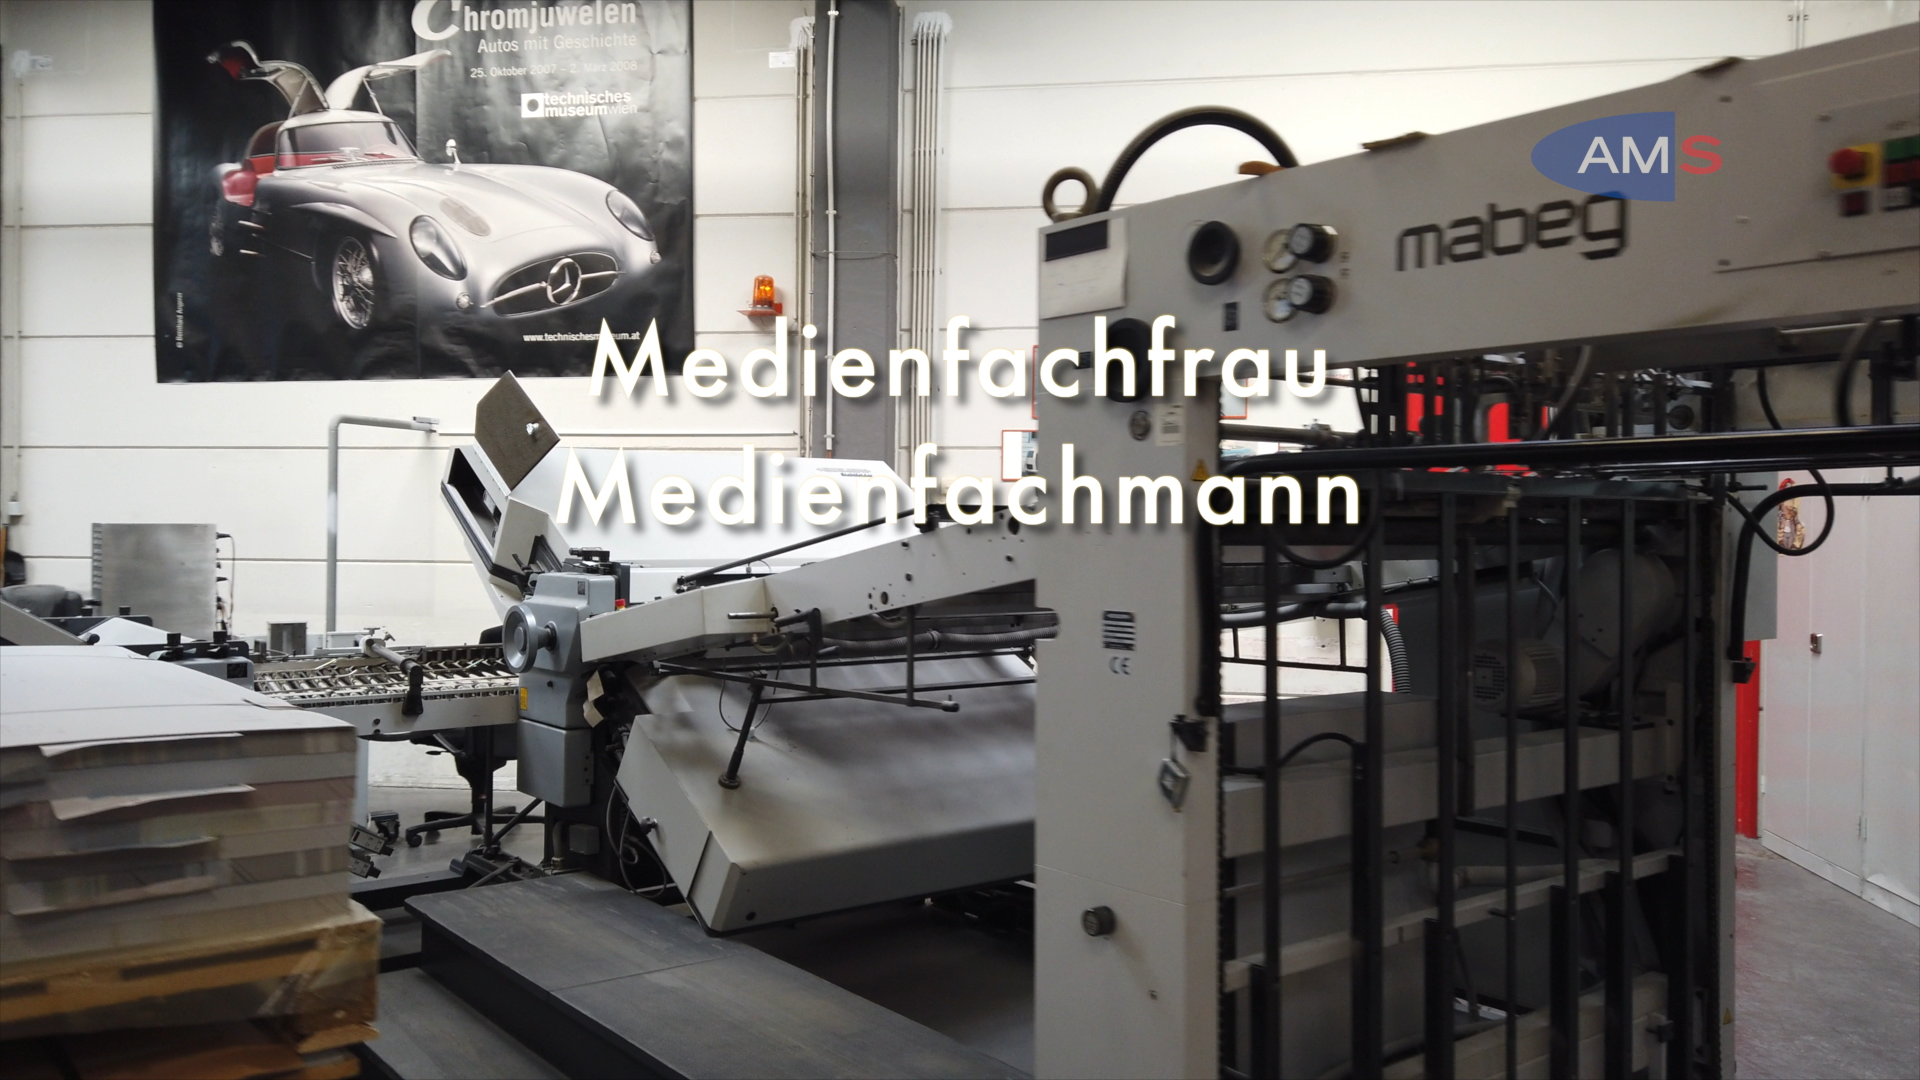 Medienfachmann/-frau - Schwerpunkt Webdevelopment und audiovisuelle Medien (Audio, Video und Animation)